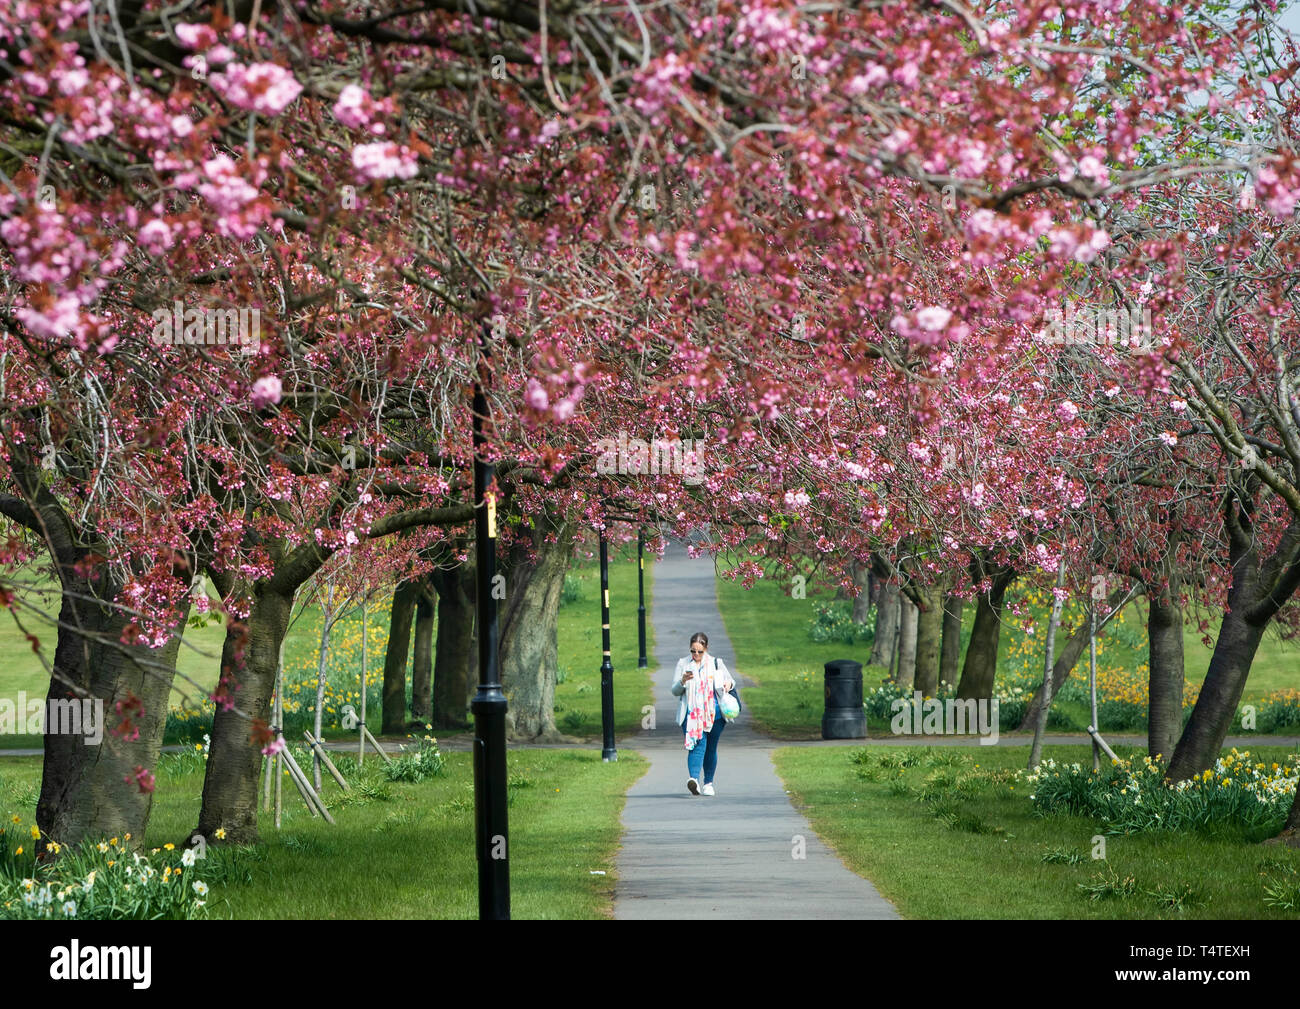 Una mujer camina por un camino bordeado de flores de cerezo en Harrogate, Yorkshire, Inglaterra ve el clima de primavera esta semana más cálidos, con temperaturas de hasta 22 grados centígrados en el tiempo para el fin de semana de Pascua. Foto de stock